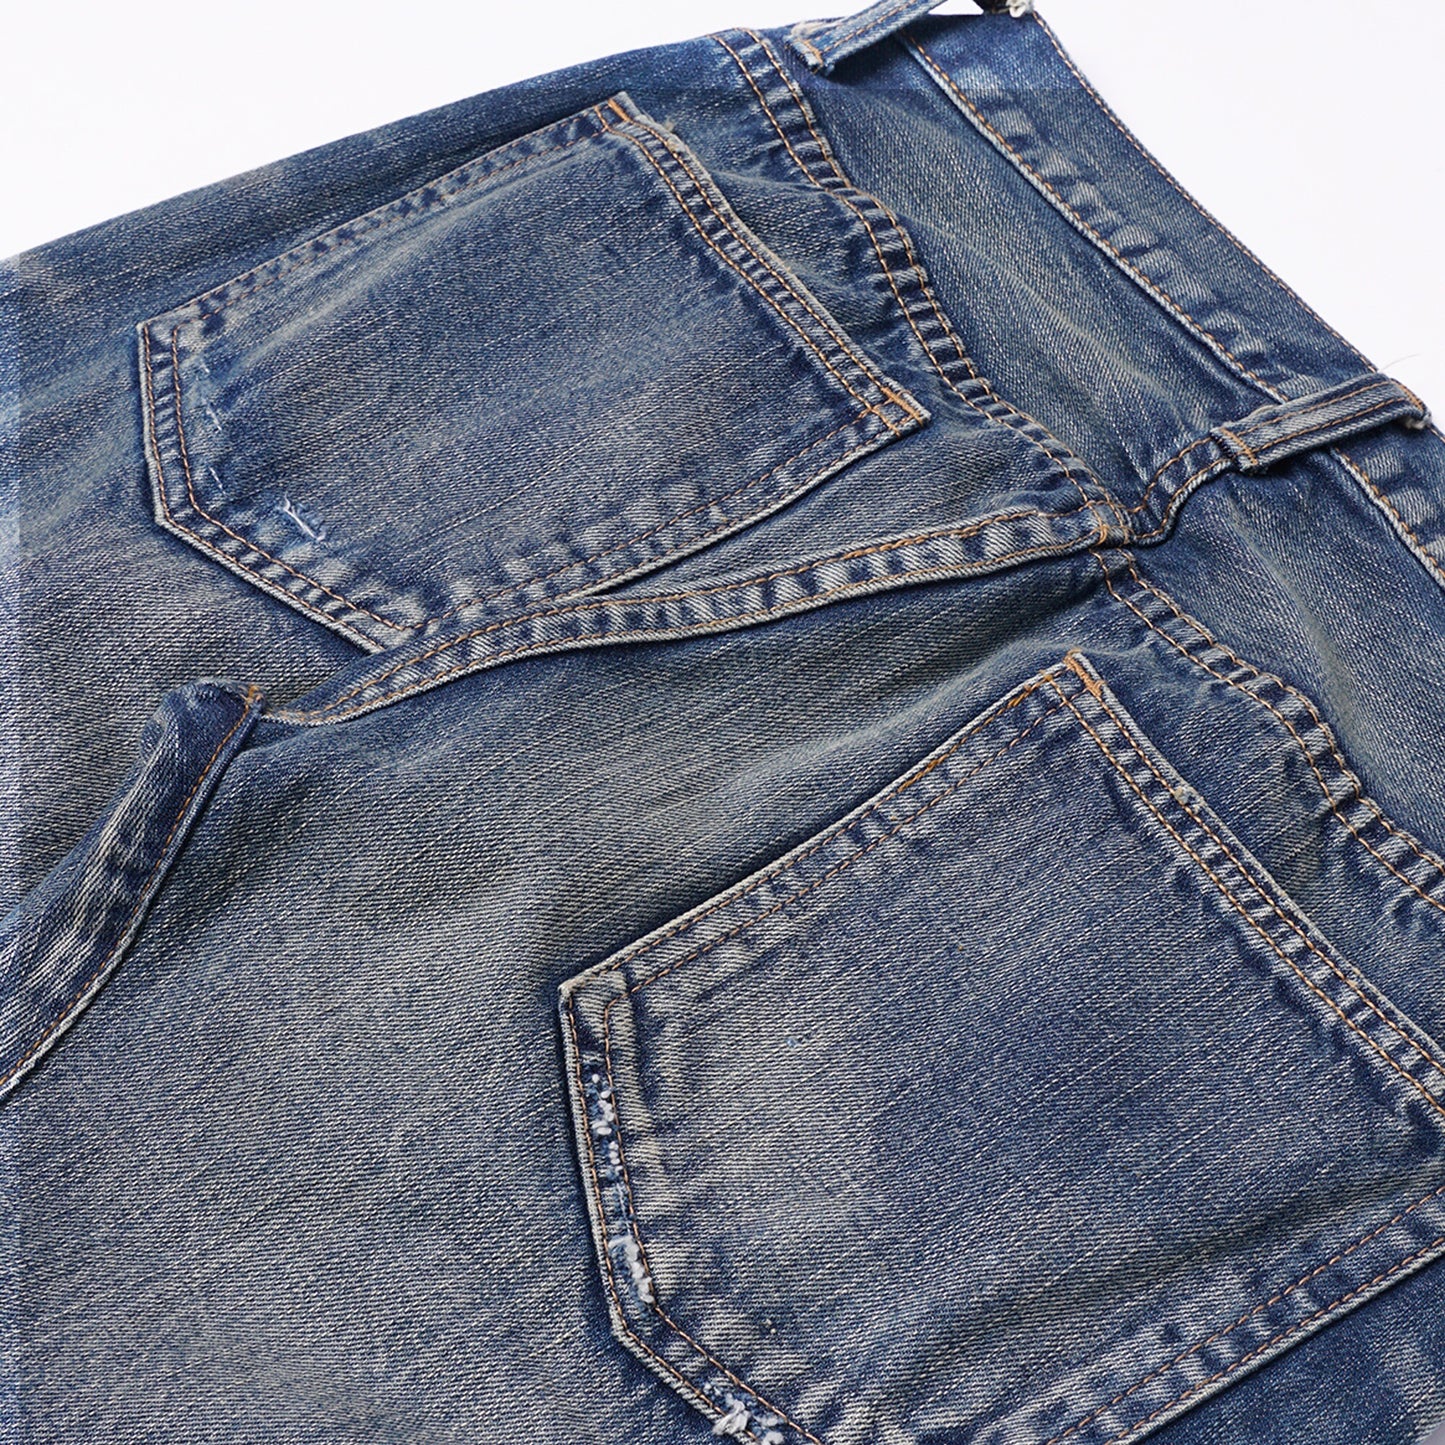 【訂製】RIII 3 Years Vintage Washed Slim Cut Jeans